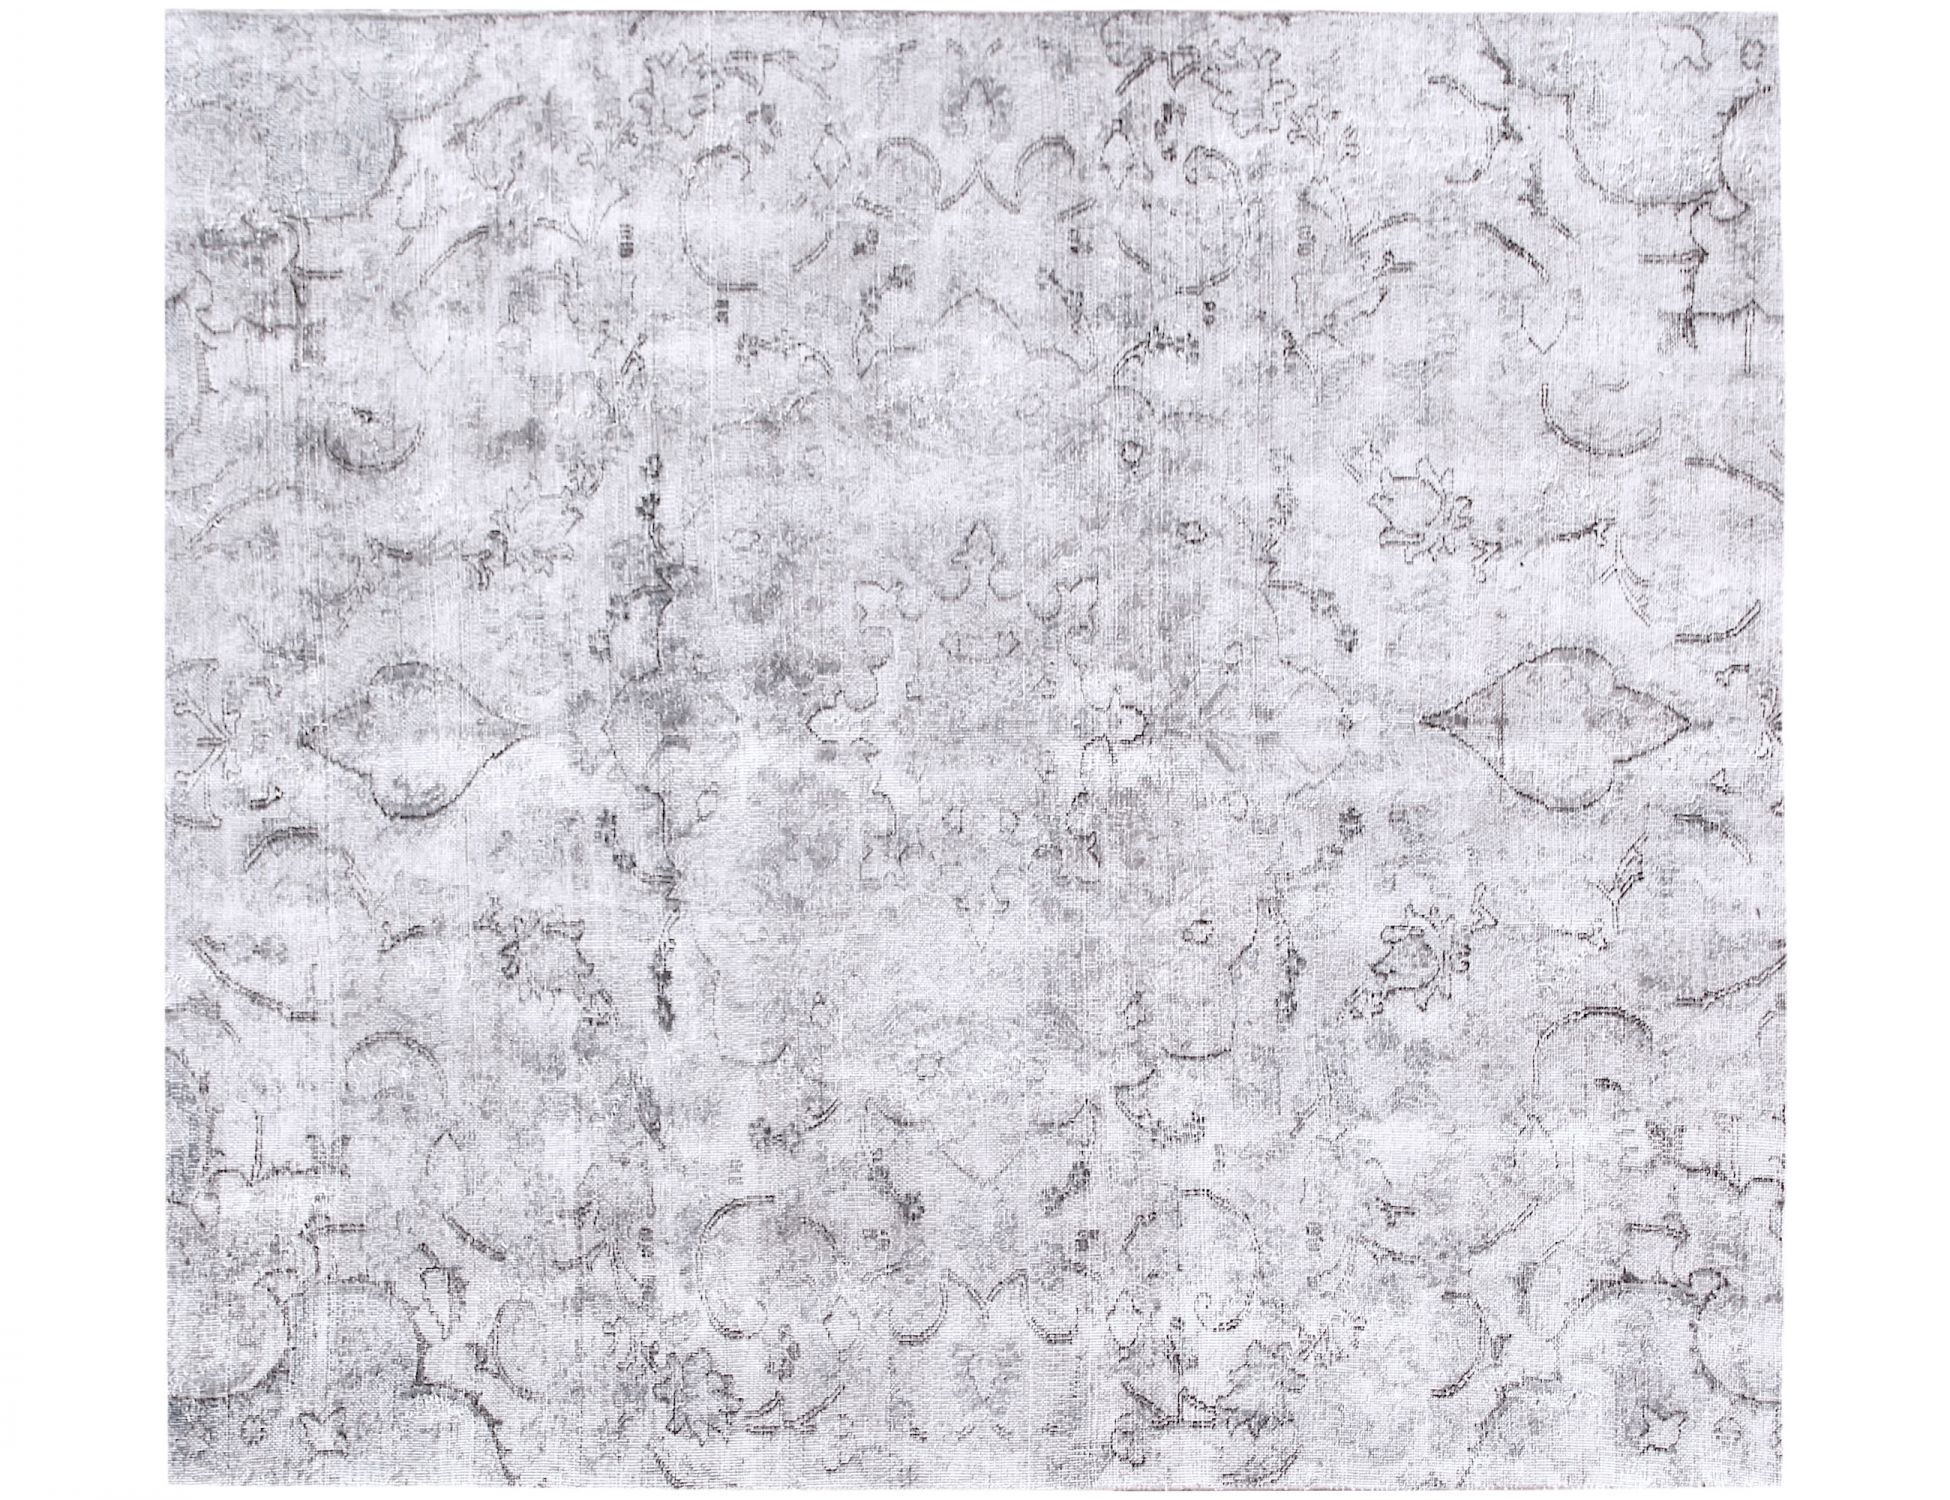 Quadrat  Vintage Teppich  grau <br/>182 x 182 cm